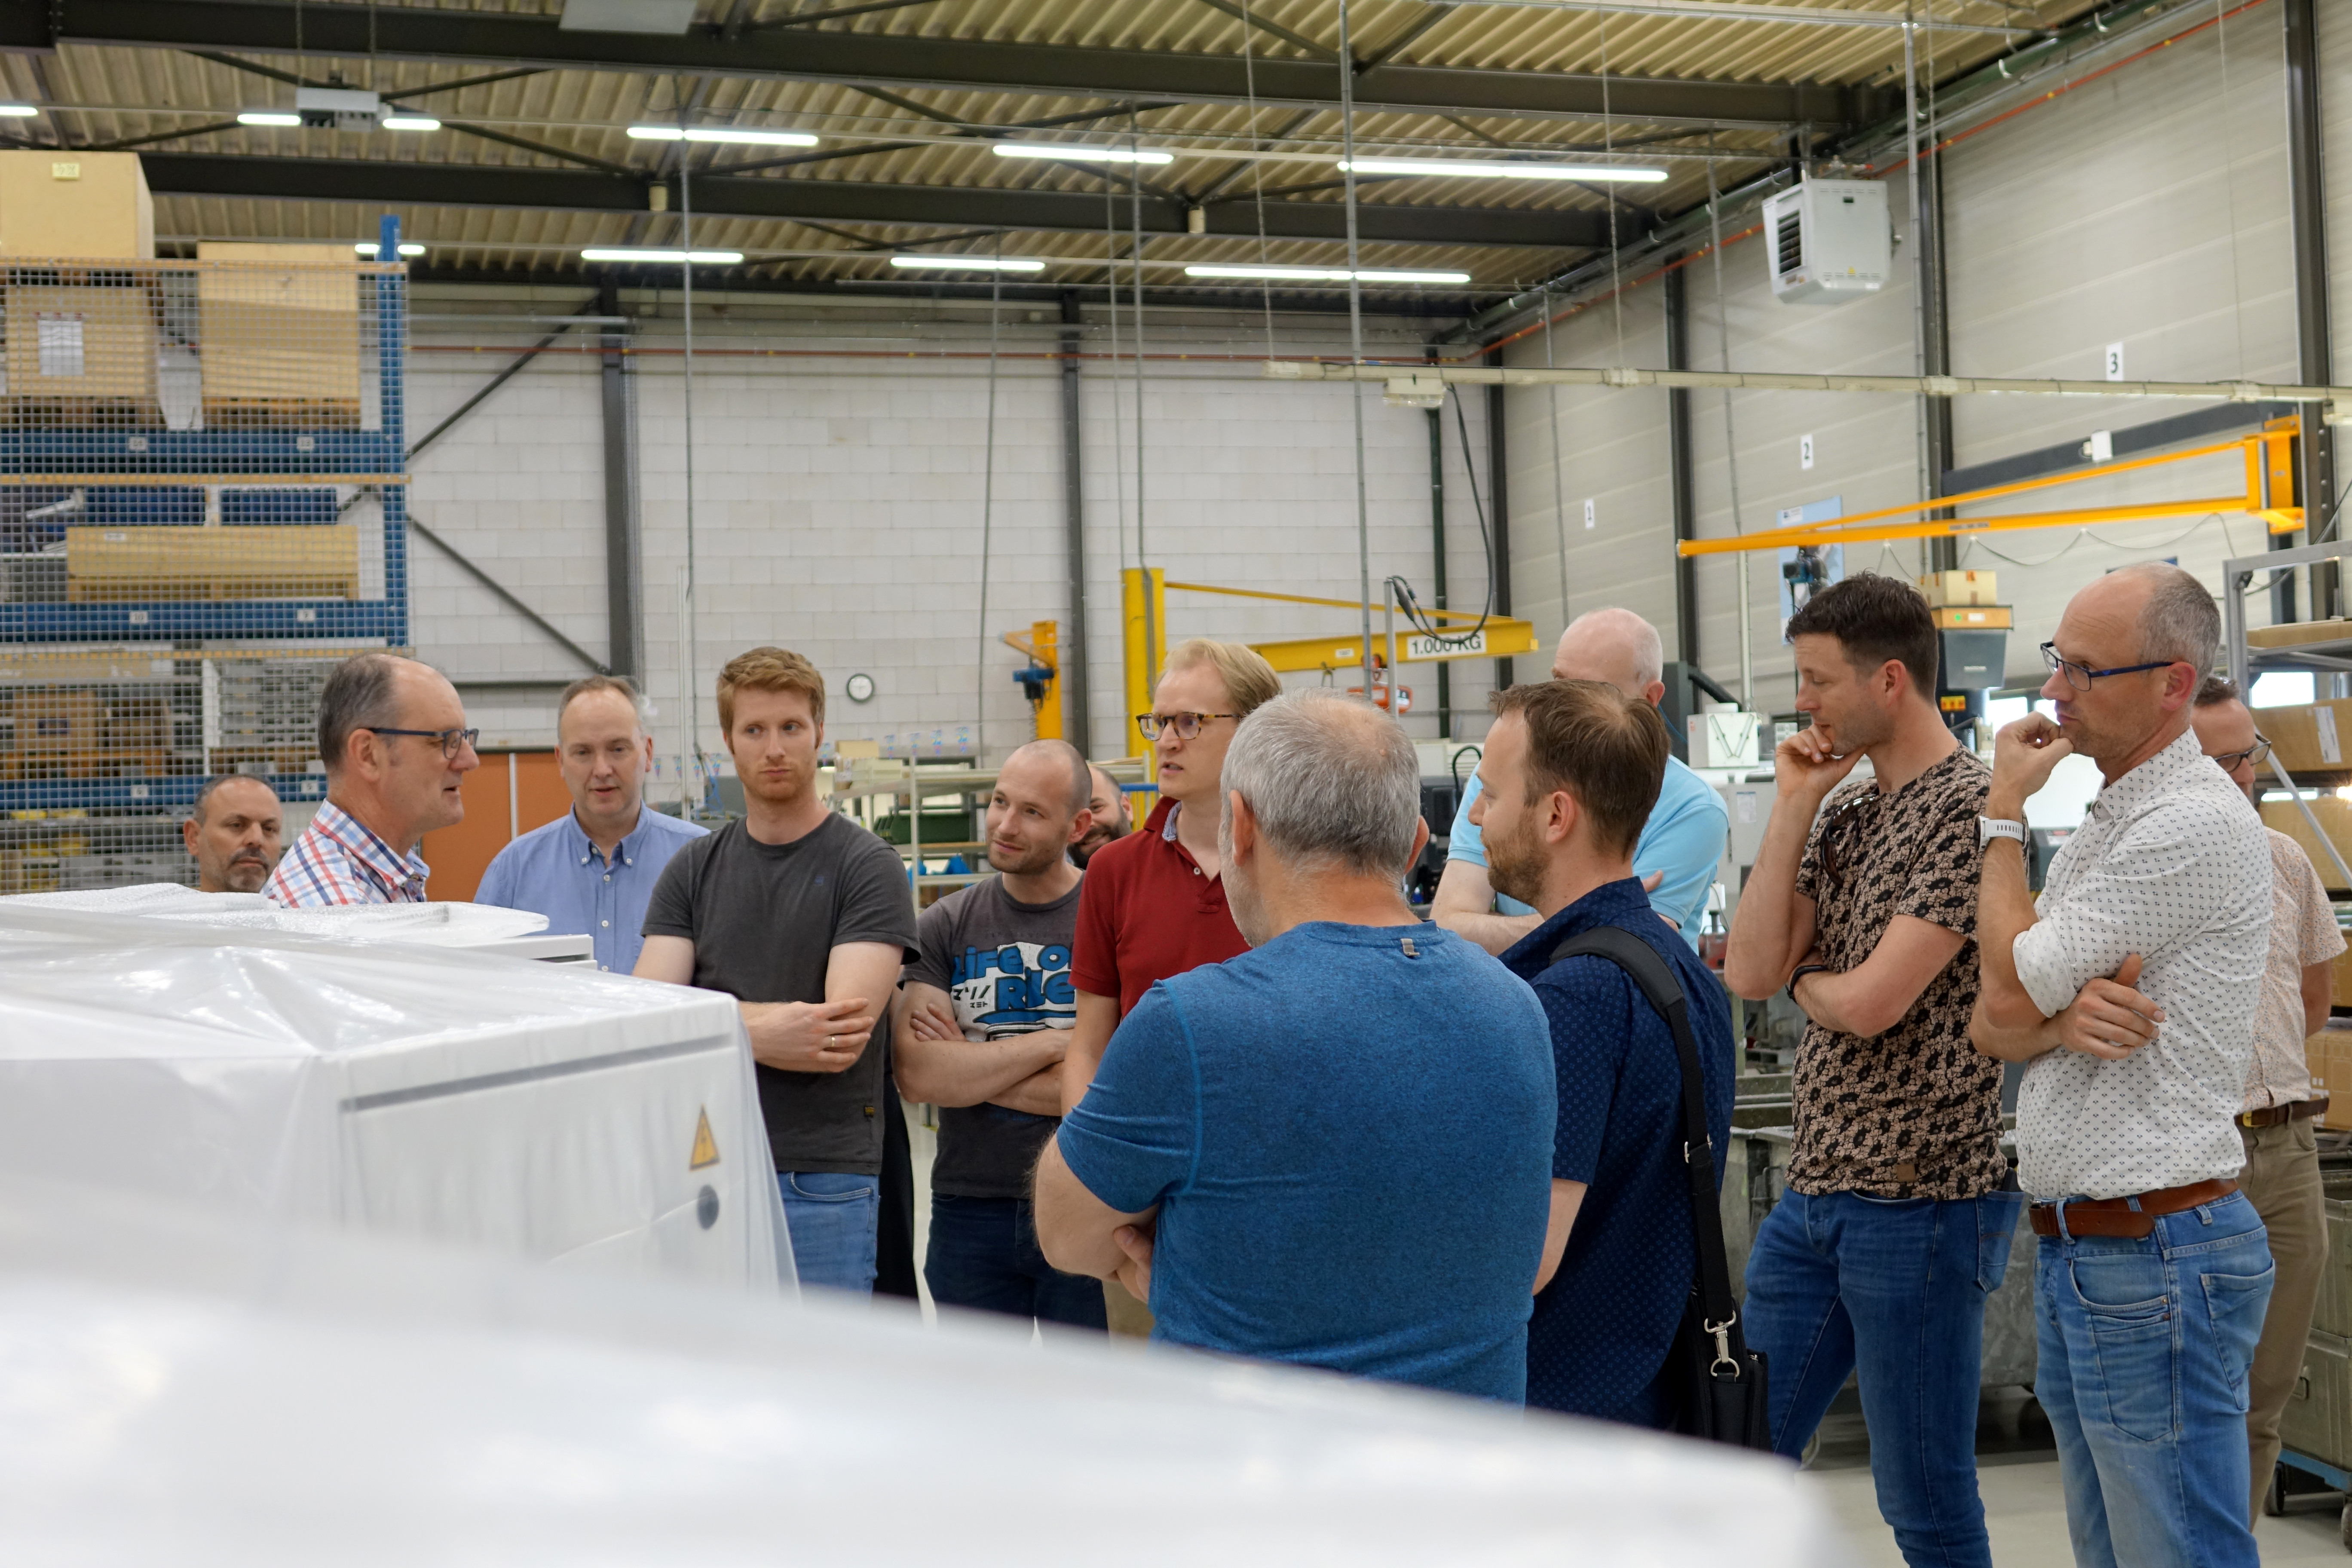 Canon Production Printing op bezoek bij Manders Automation. John Thijssen geeft de groep uitleg over sealmachines.